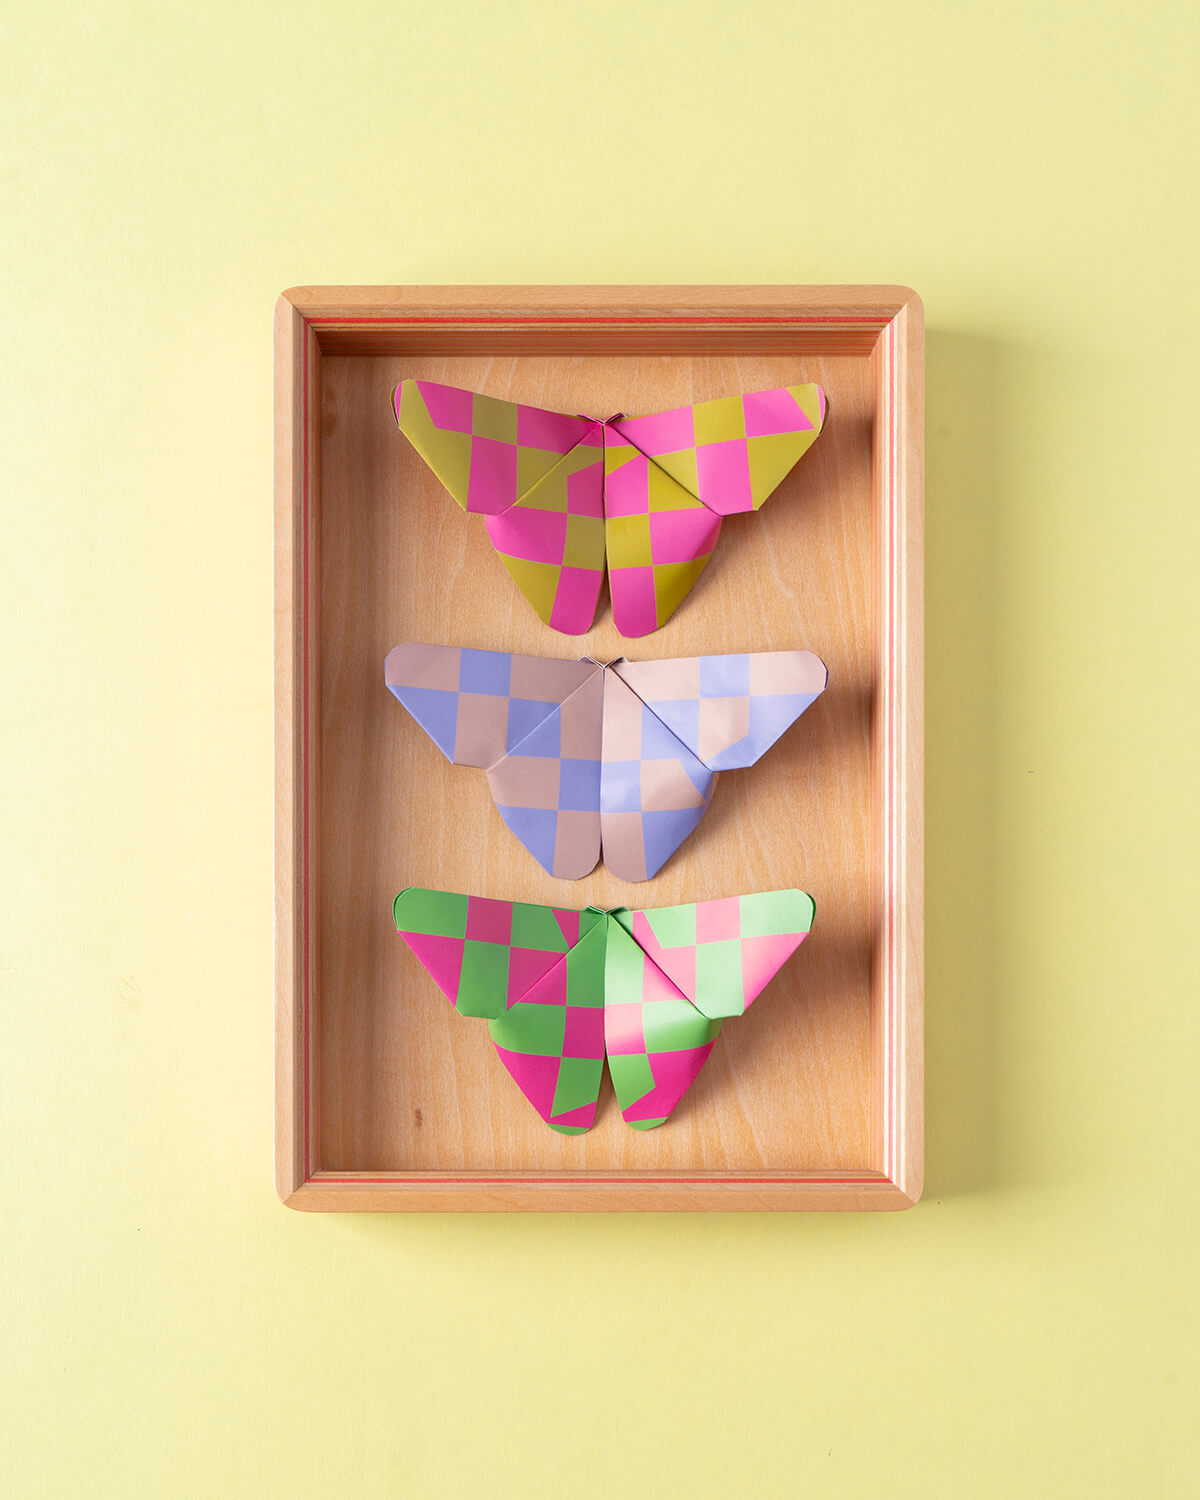 M+ Monogram Origami Paper